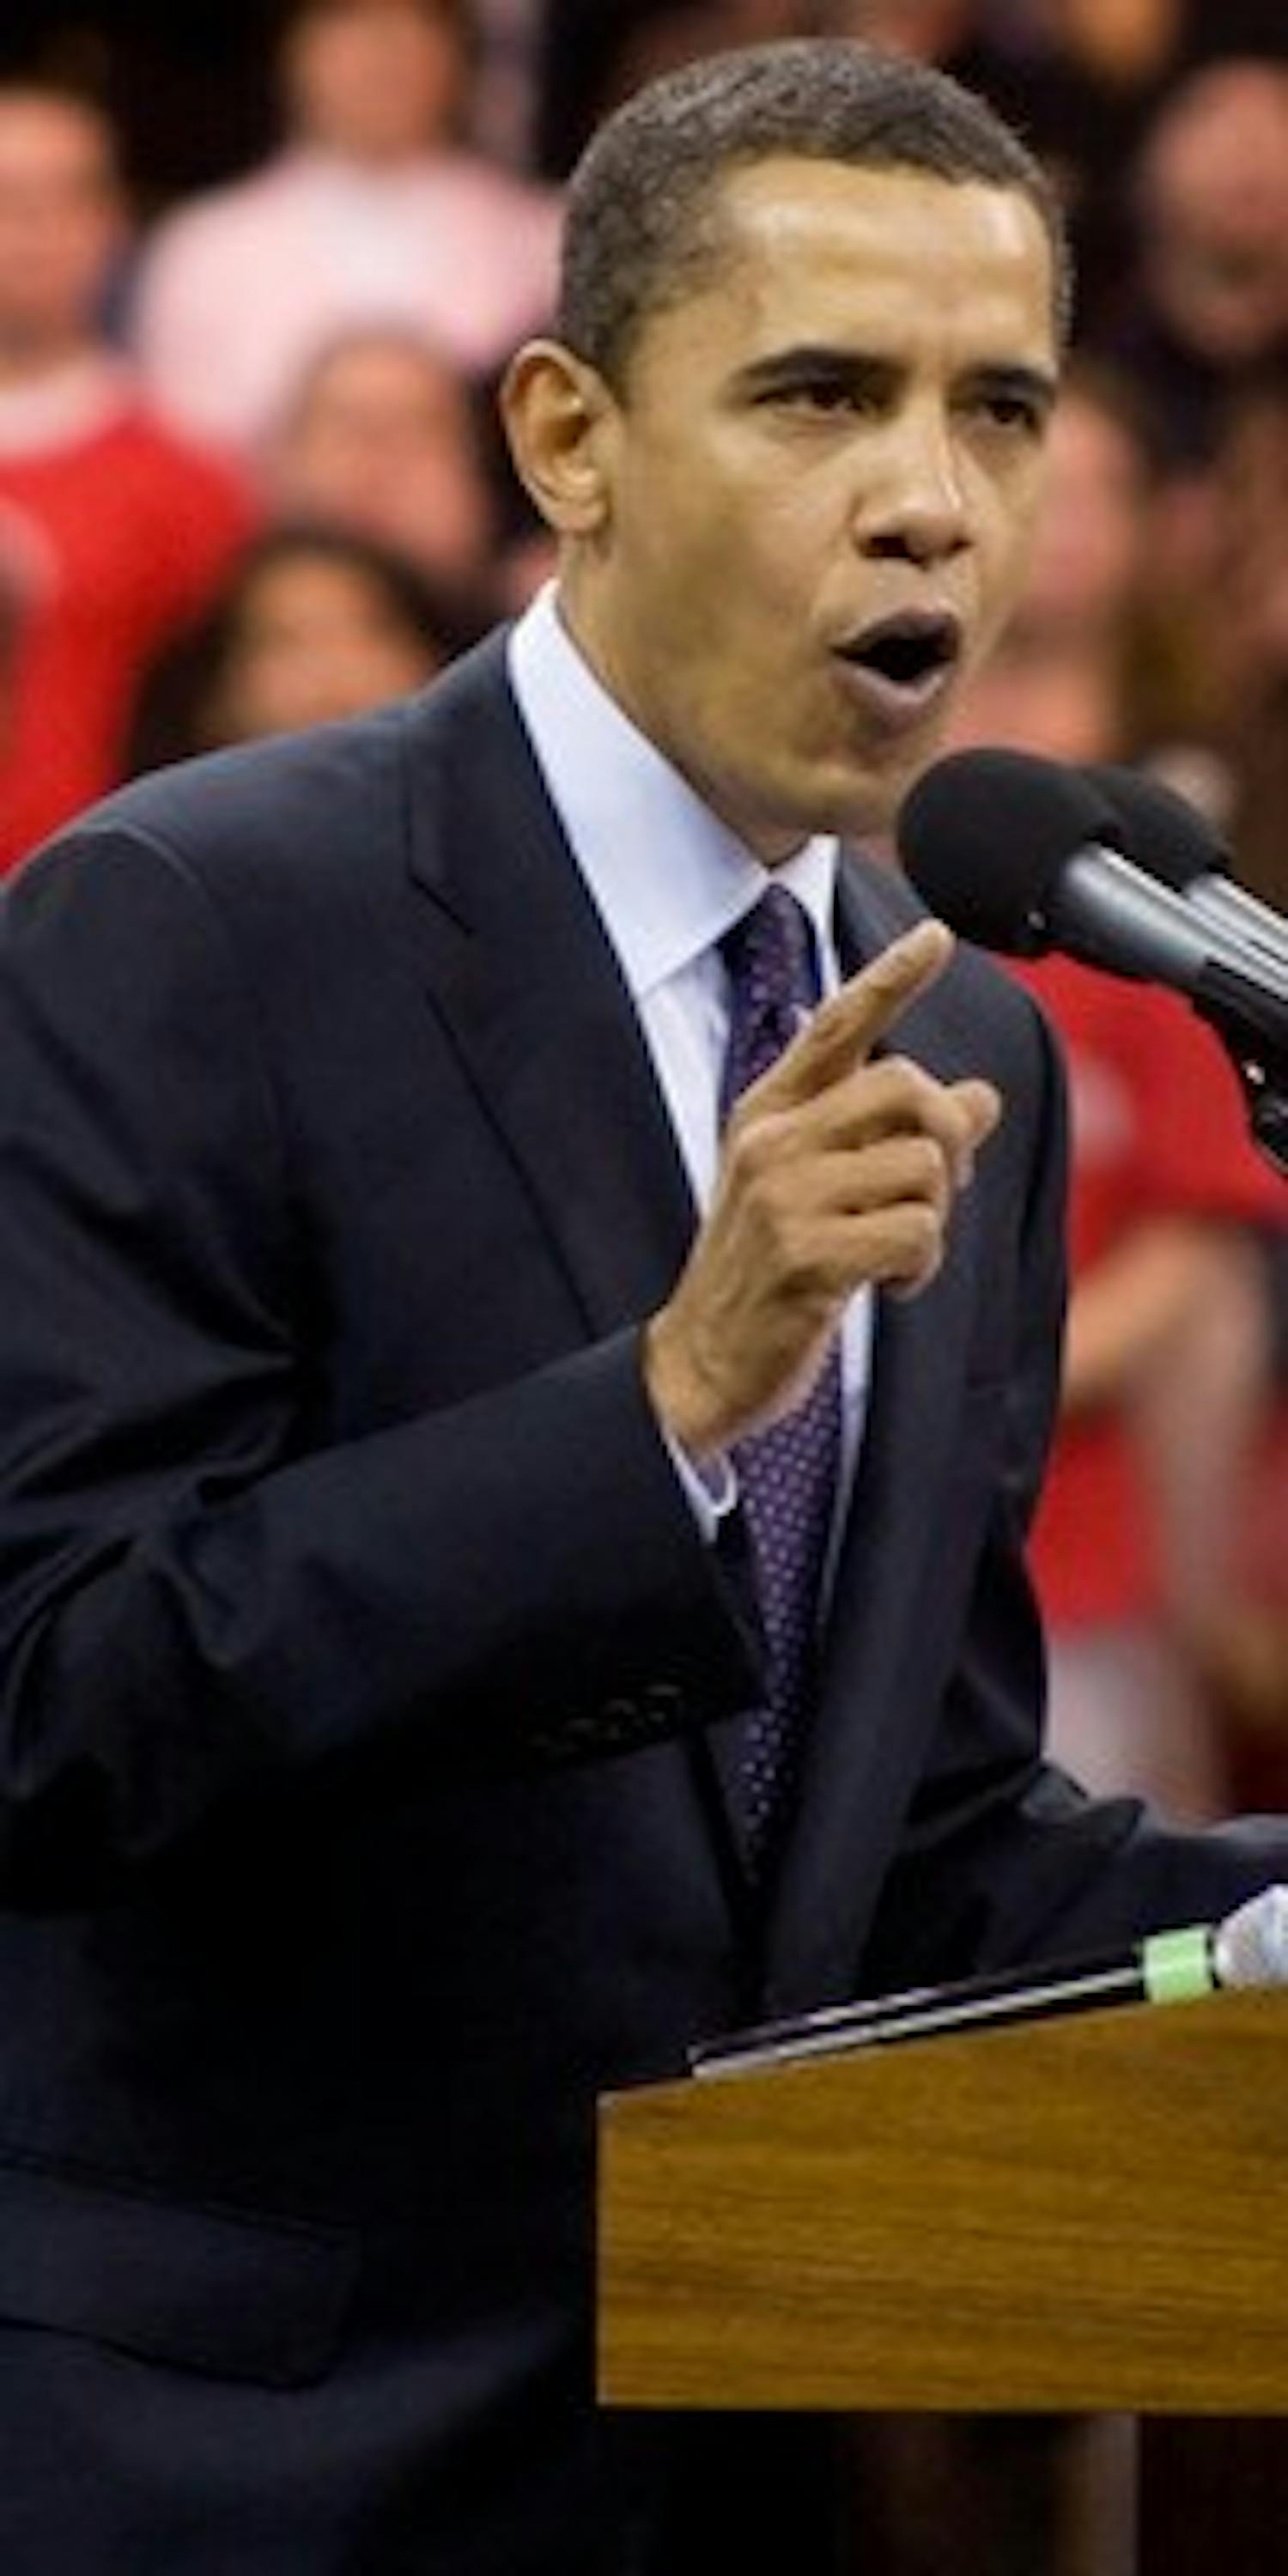 Obama accused of plagiarism in speech